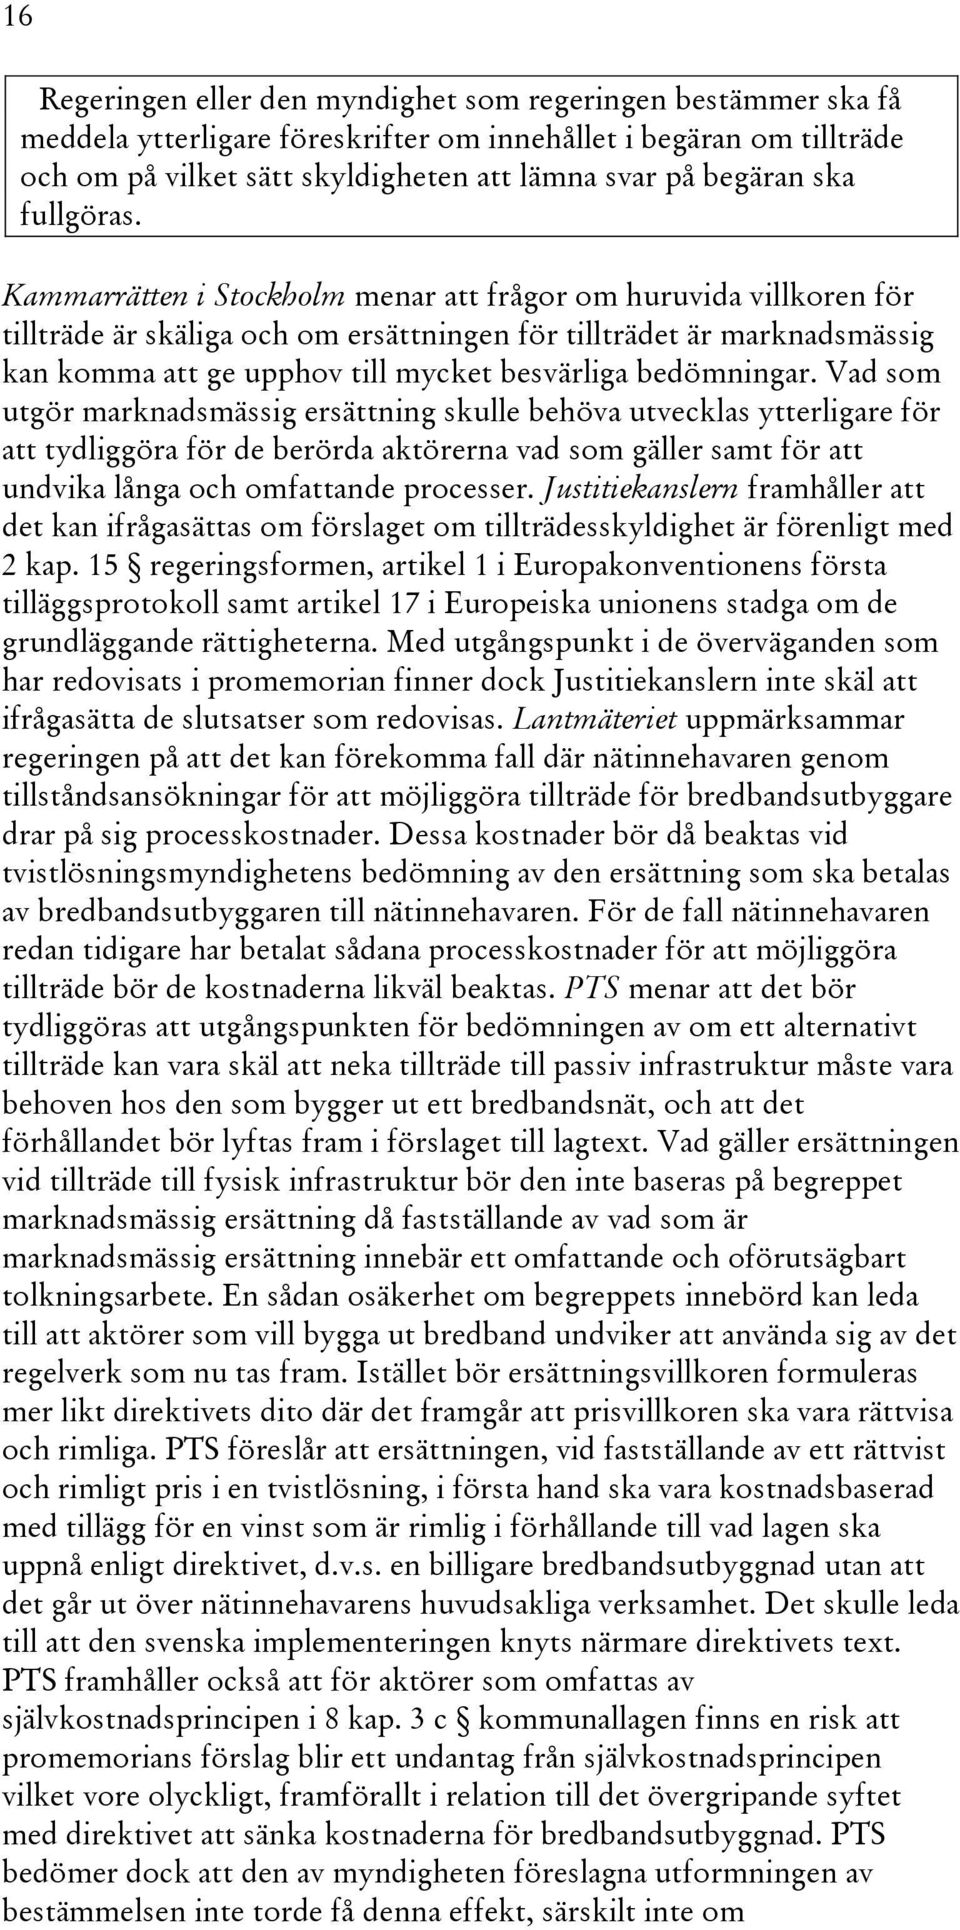 Kammarrätten i Stockholm menar att frågor om huruvida villkoren för tillträde är skäliga och om ersättningen för tillträdet är marknadsmässig kan komma att ge upphov till mycket besvärliga